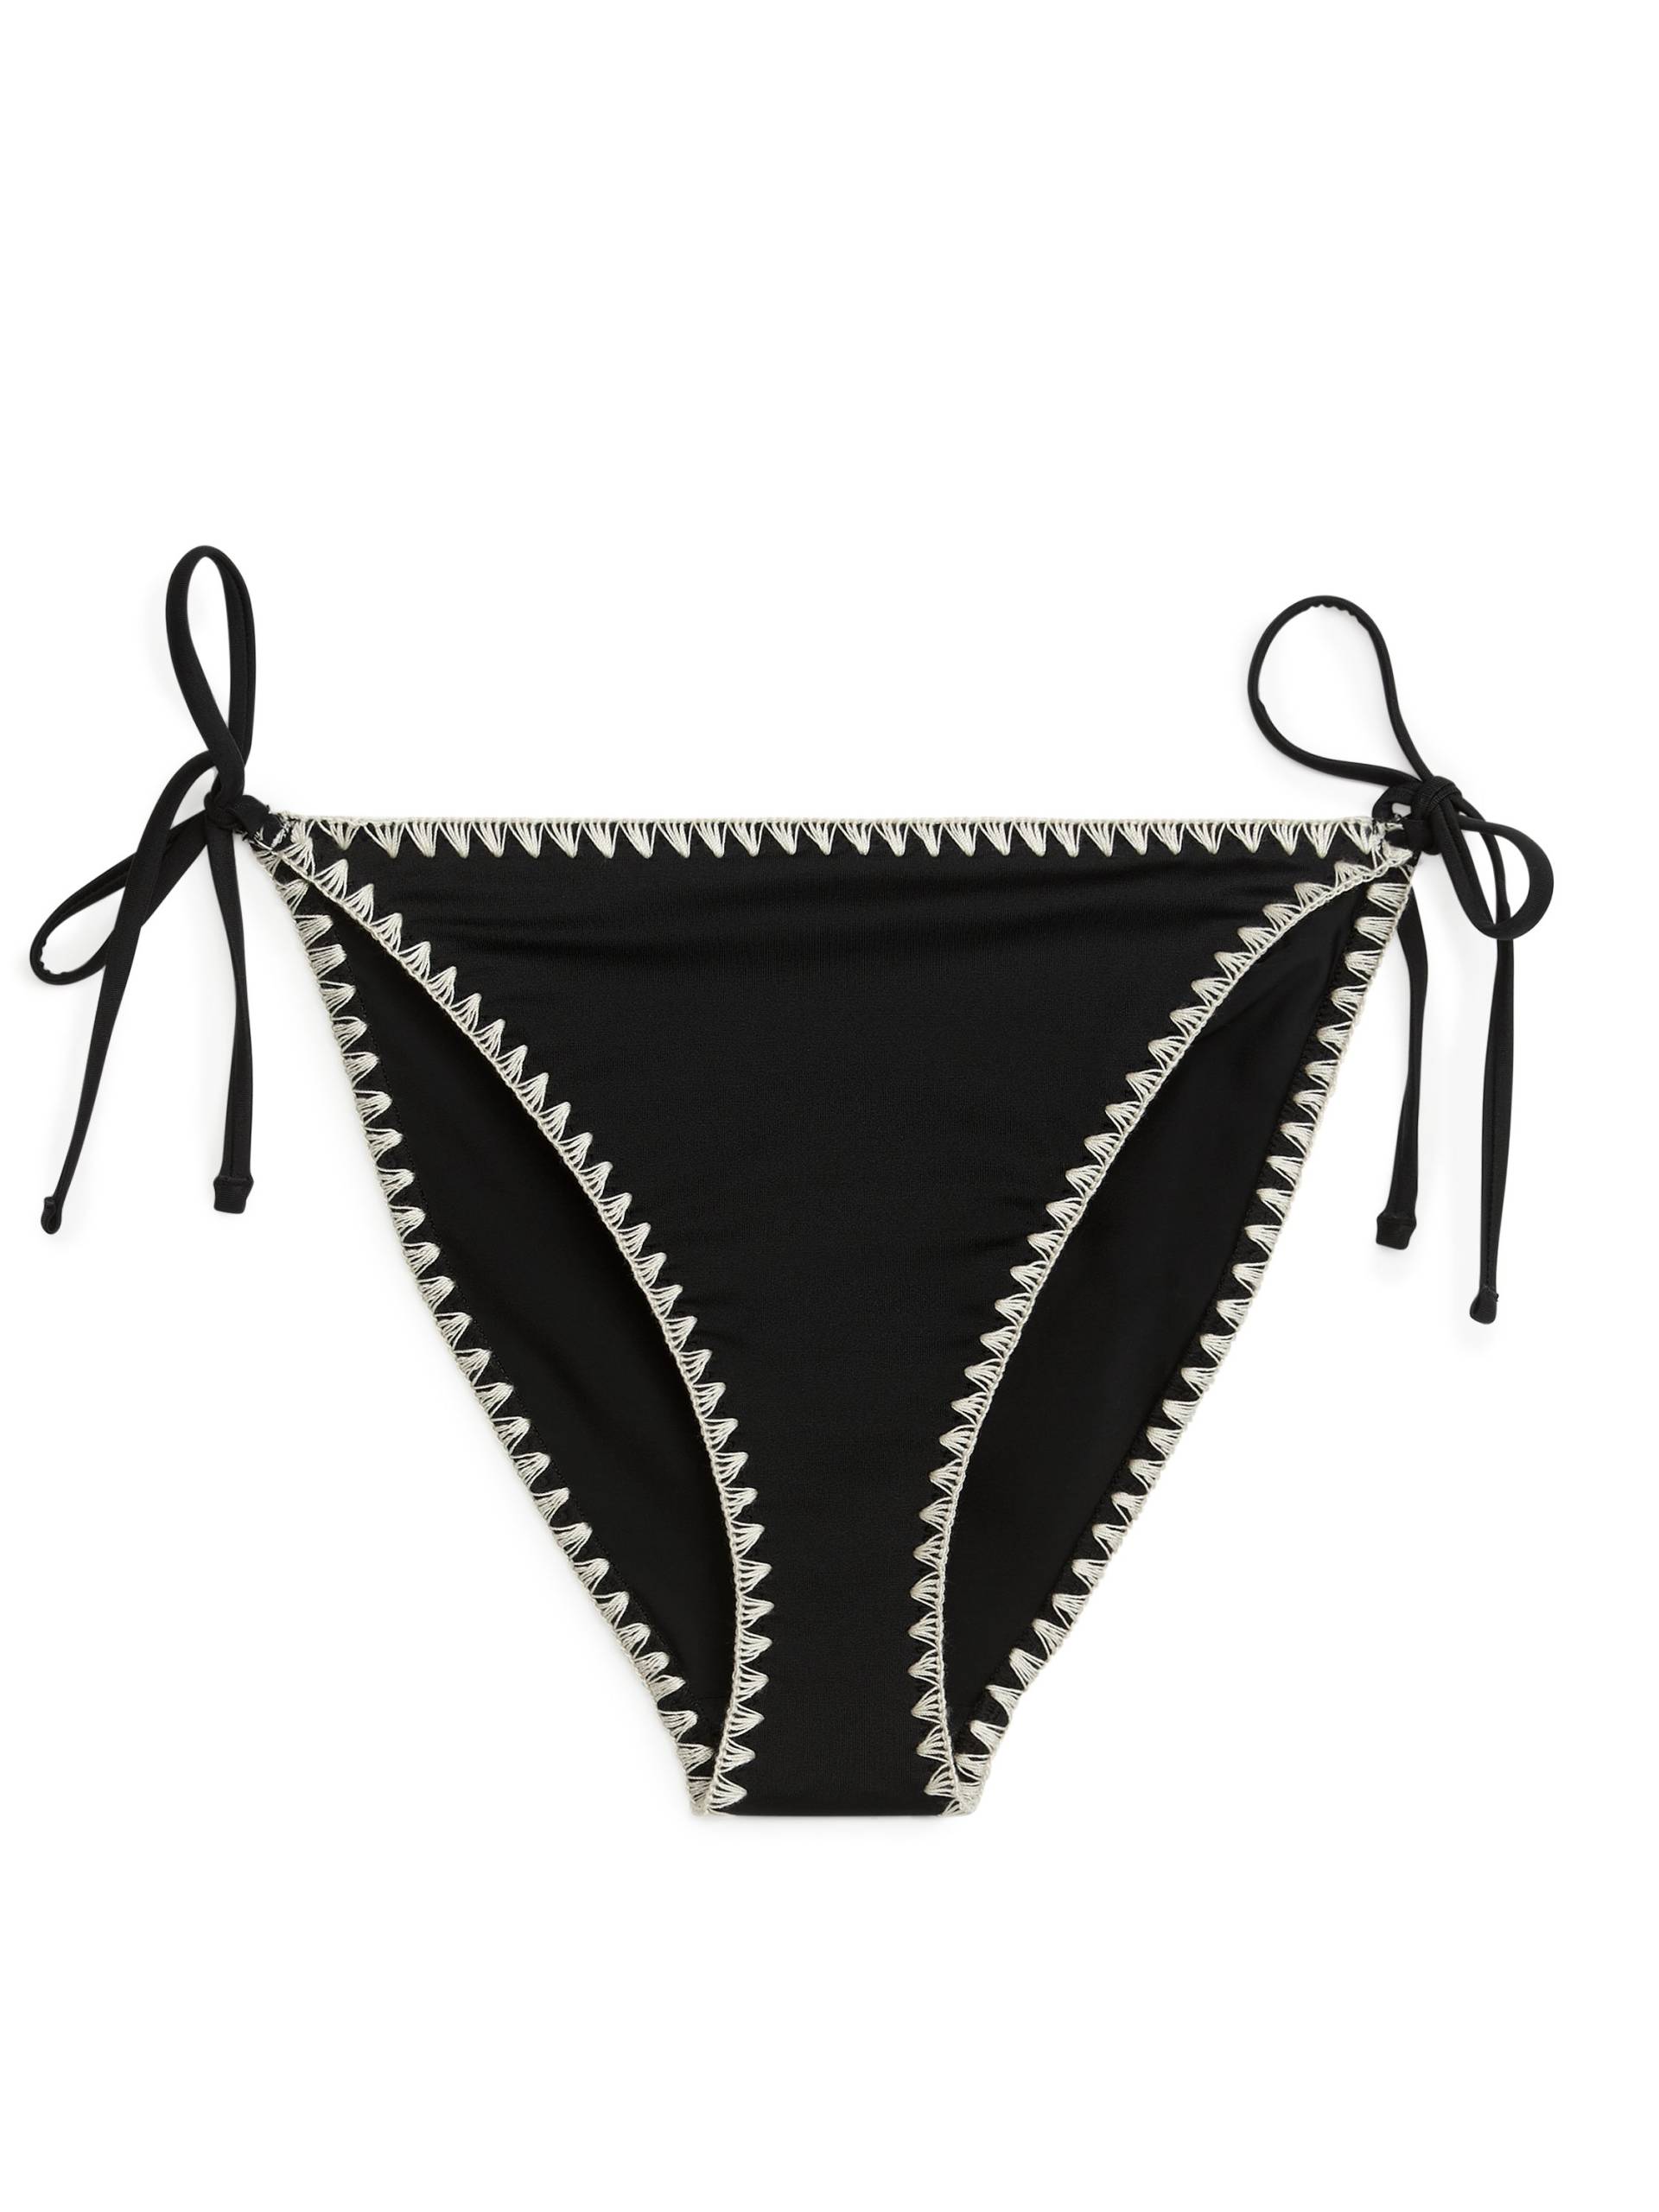 Arket Bikinitanga mit Schnürung Schwarz/Cremeweiß, Bikini-Unterteil in Größe 44. Farbe: Black/off white von Arket